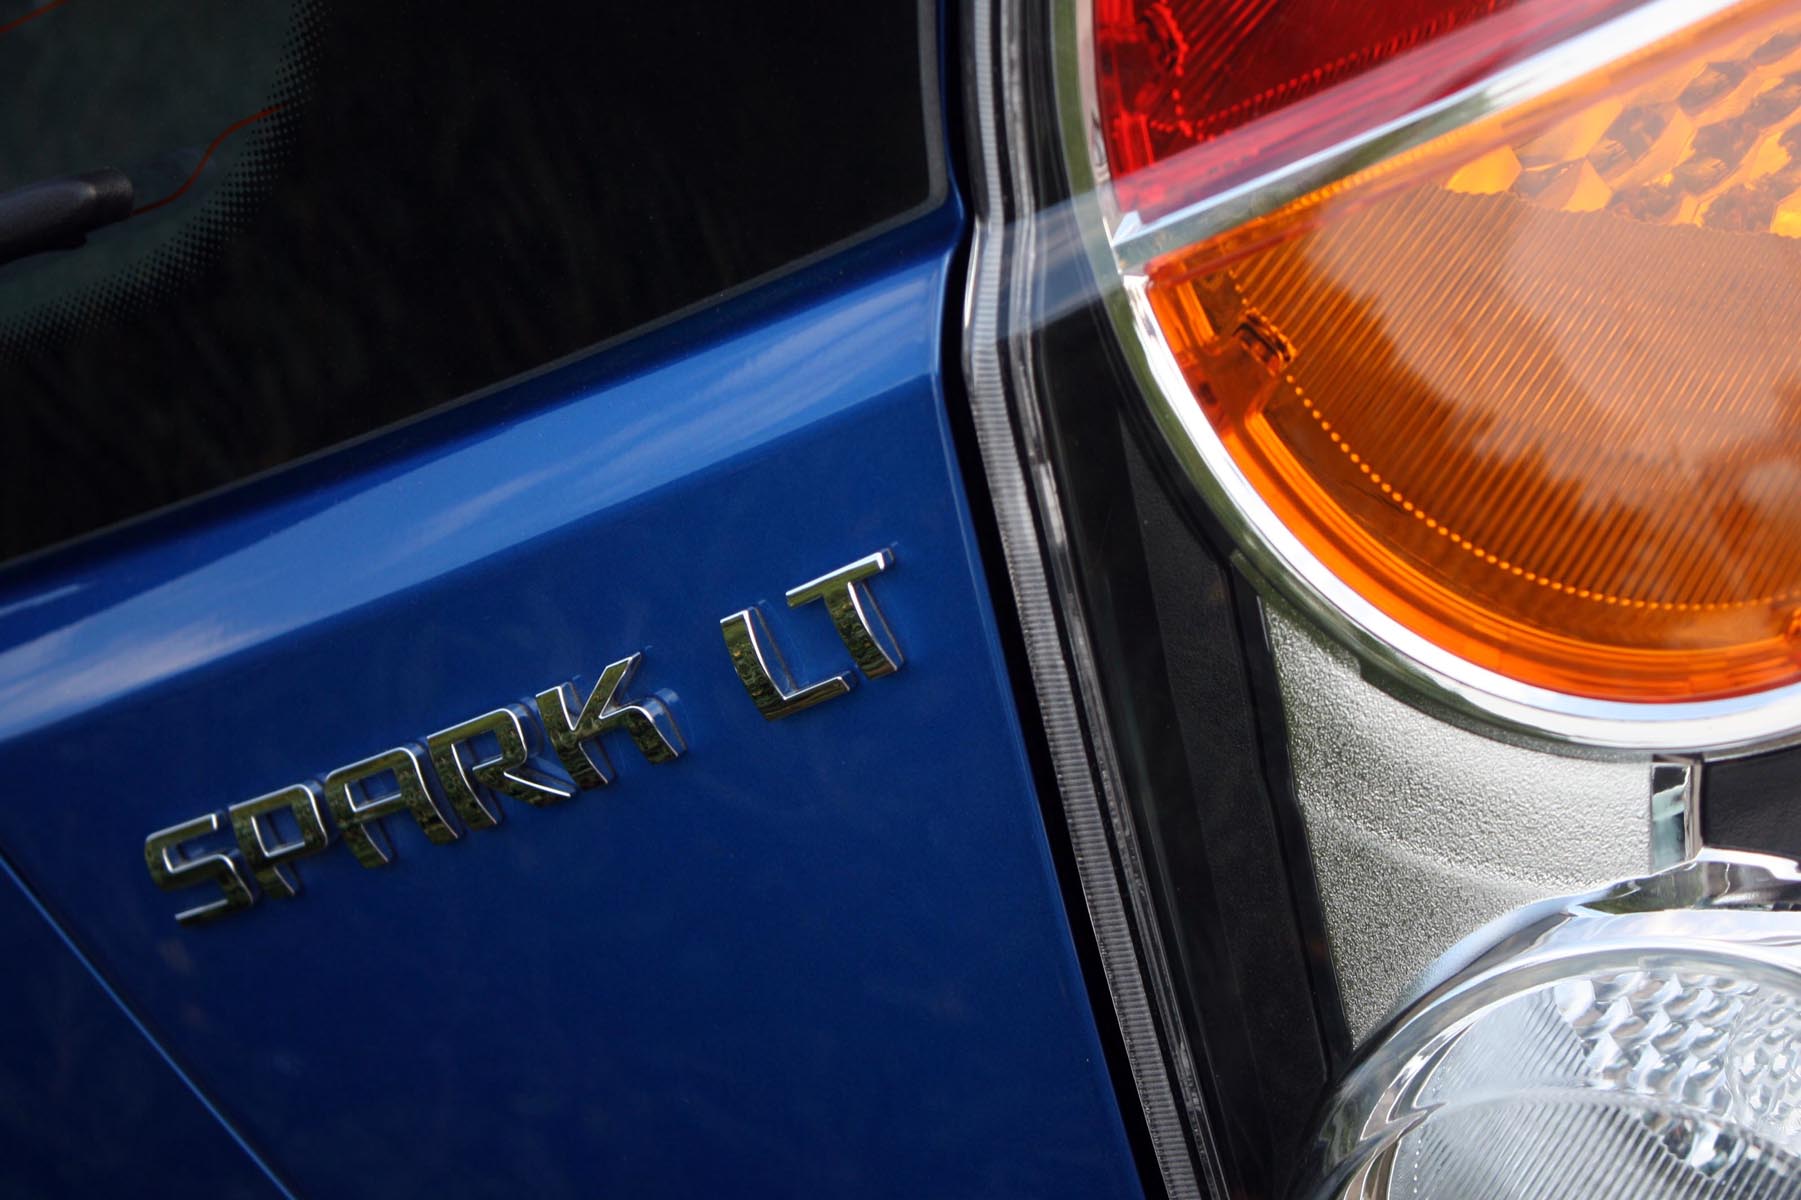 Noul Chevrolet Spark a fost lansat pentru presa internationala la Atena, in perioada 8-9 decembrie